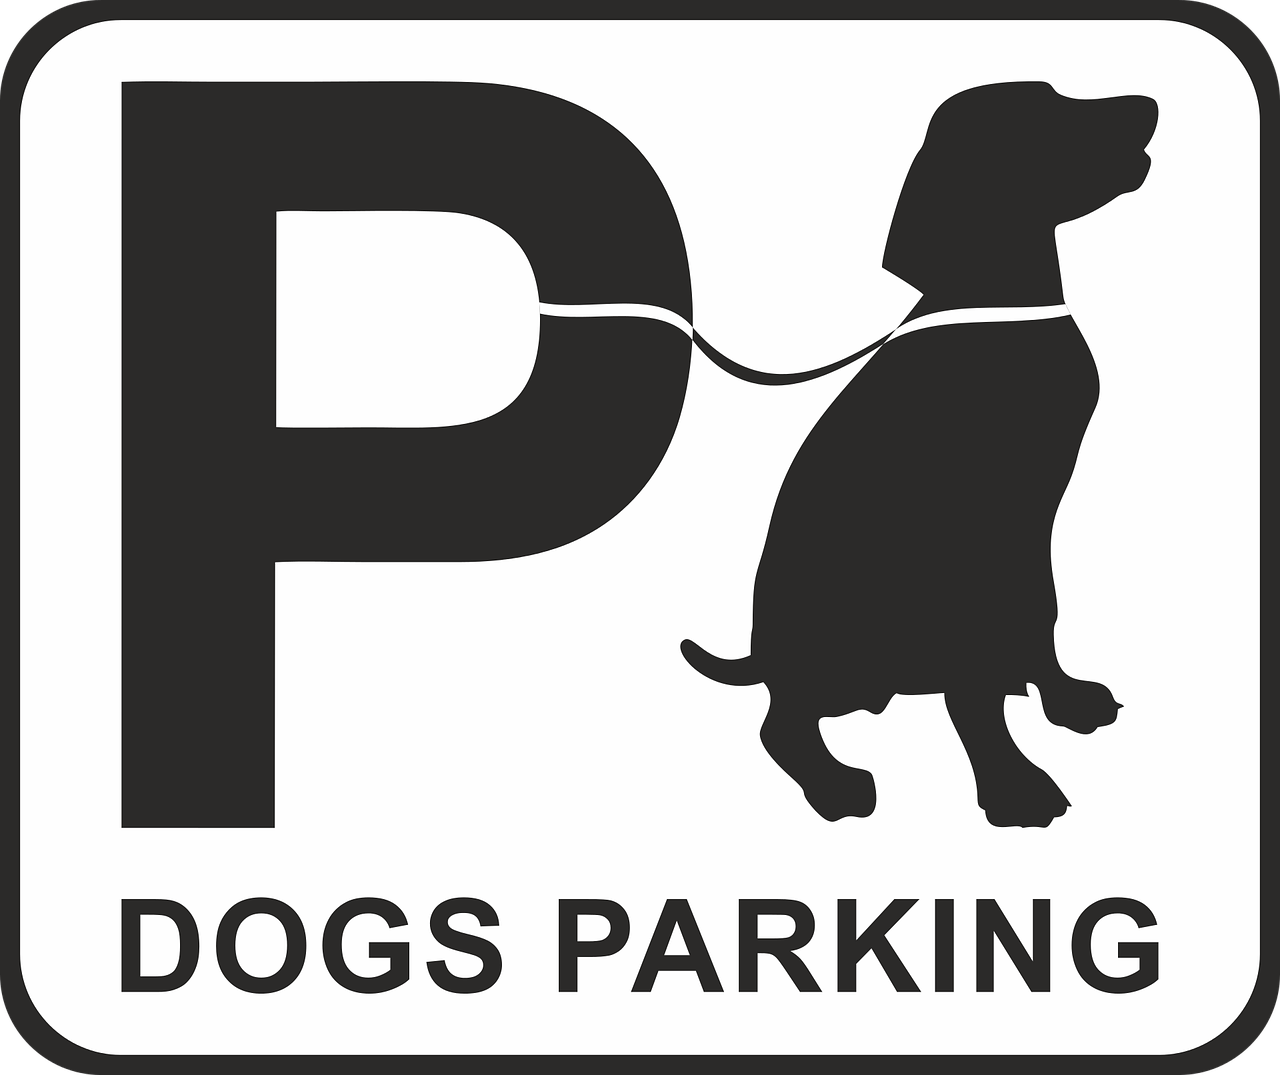 parking dog dog park place free photo